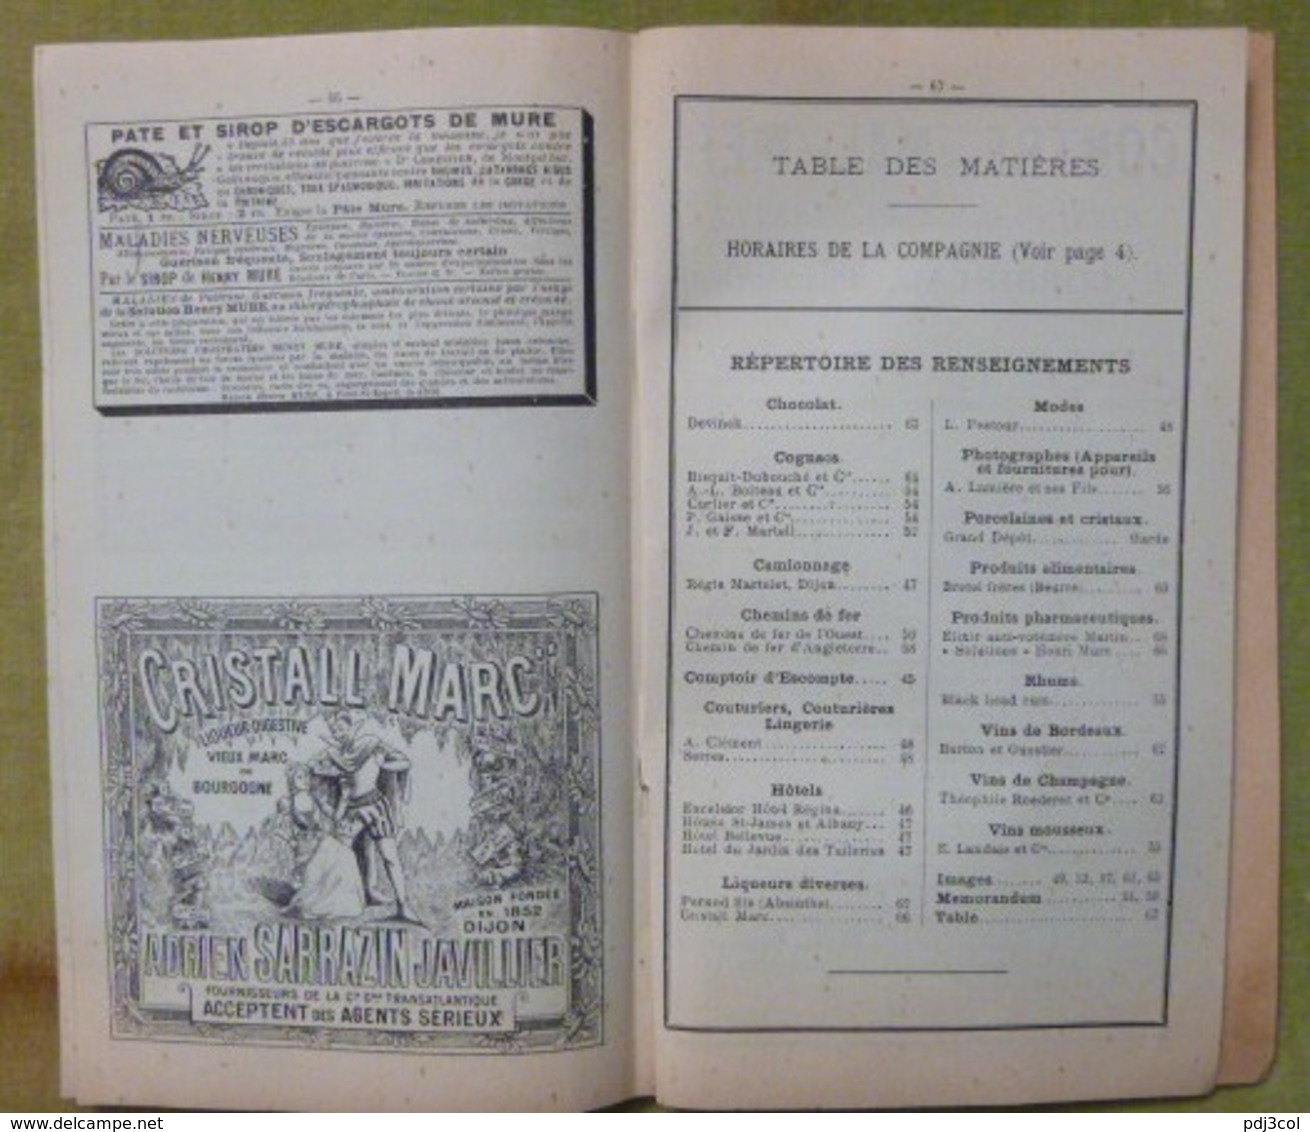 2 guides officiels Cie Gle Transatlantique - Méditerranée - mai-juin 1903 et Juillet-Aout 1910